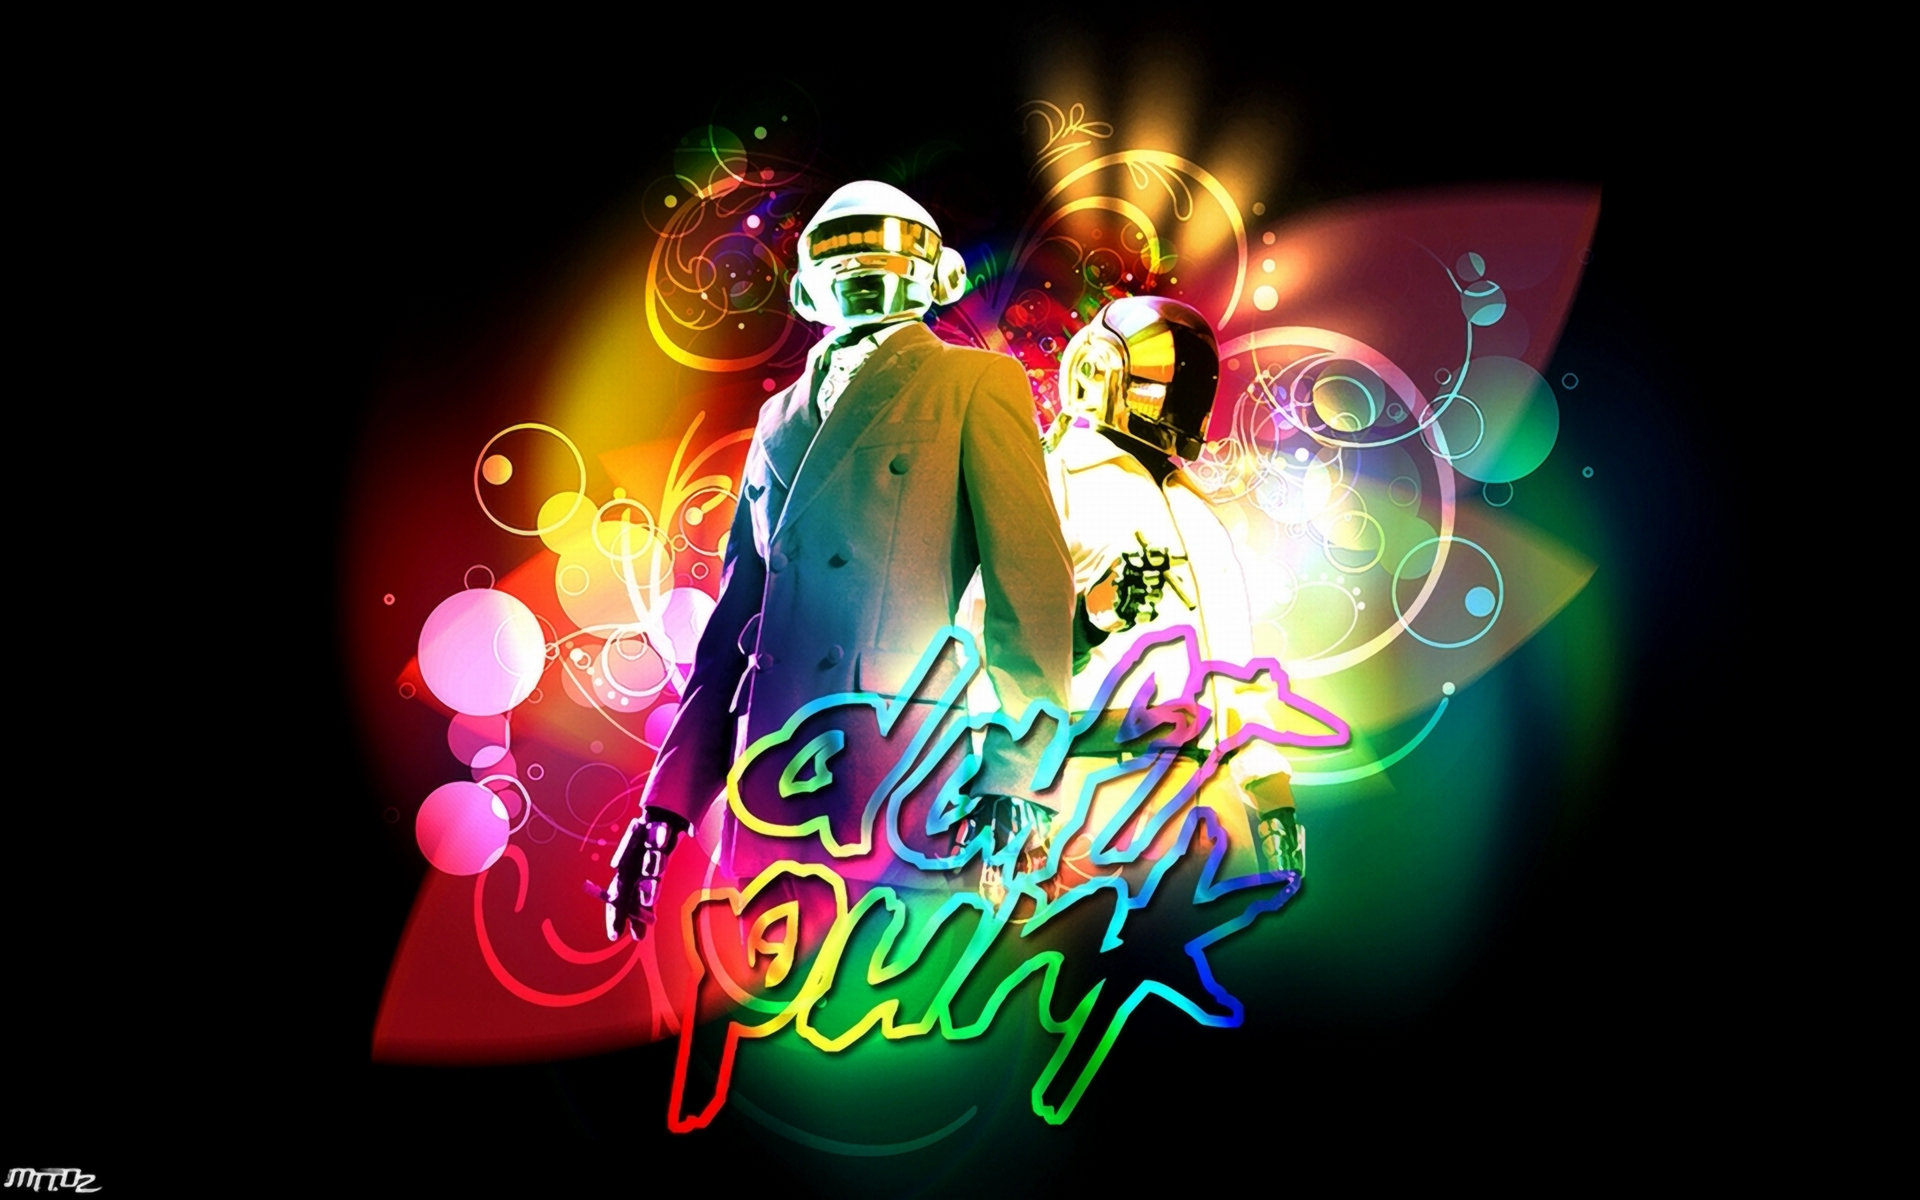 Daft Punk, music bands - desktop wallpaper